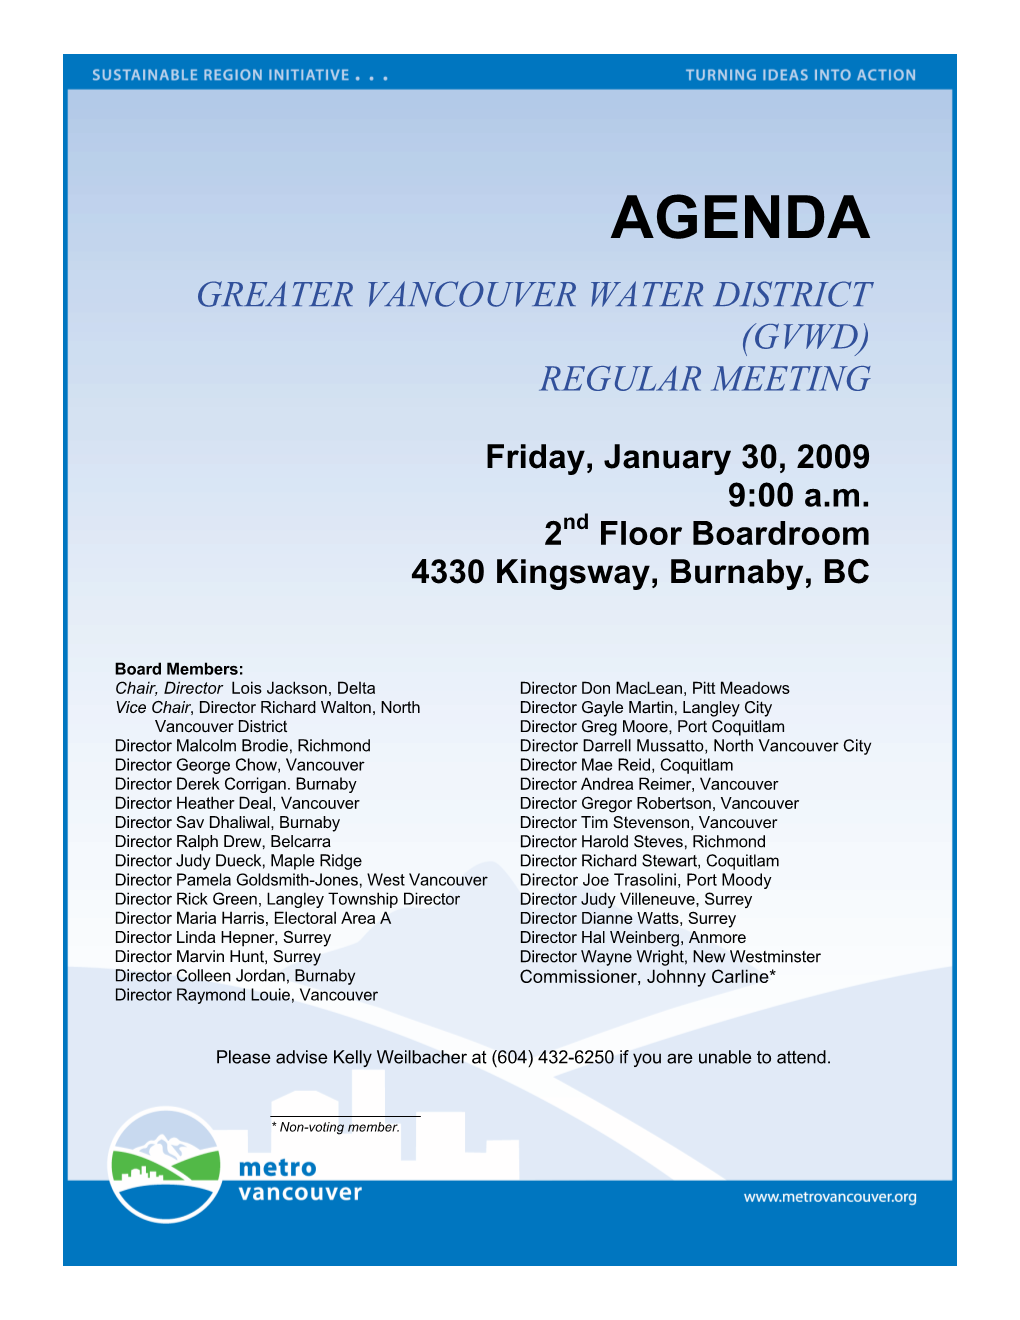 GVWD Board Meeting Agenda